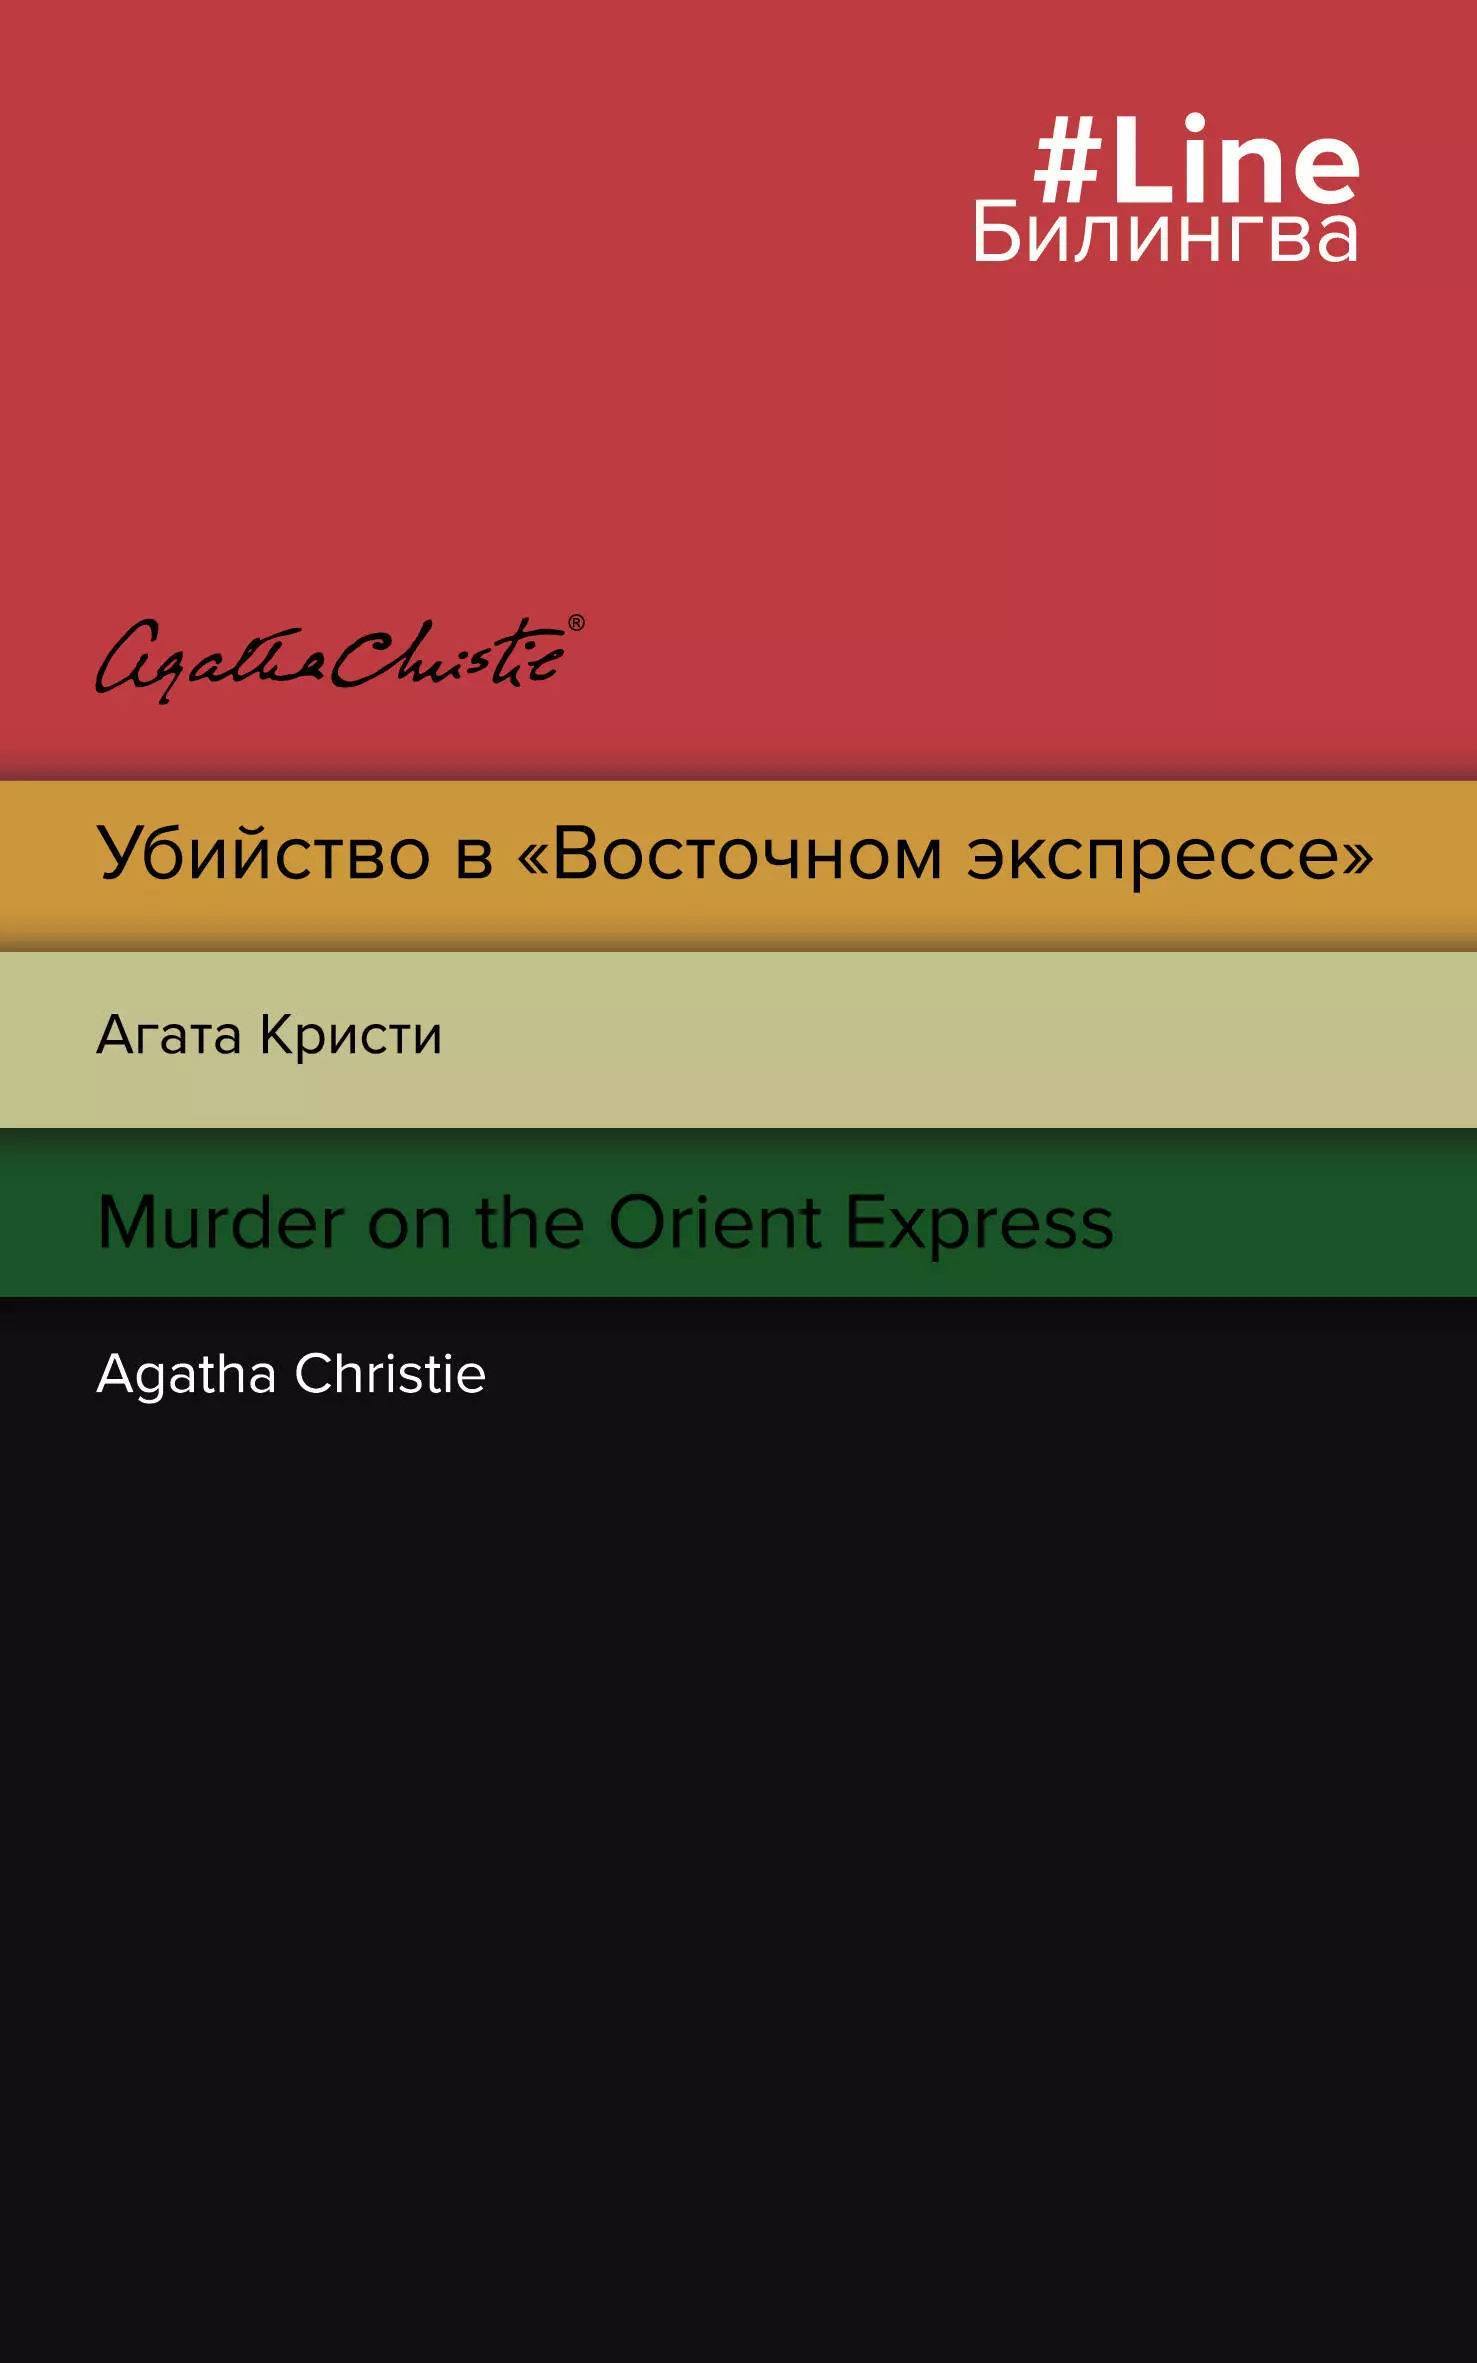 Убийство в Восточном экспрессе / Murder on the Orient Express кристи агата убийство в восточном экспрессе murder on the orient express